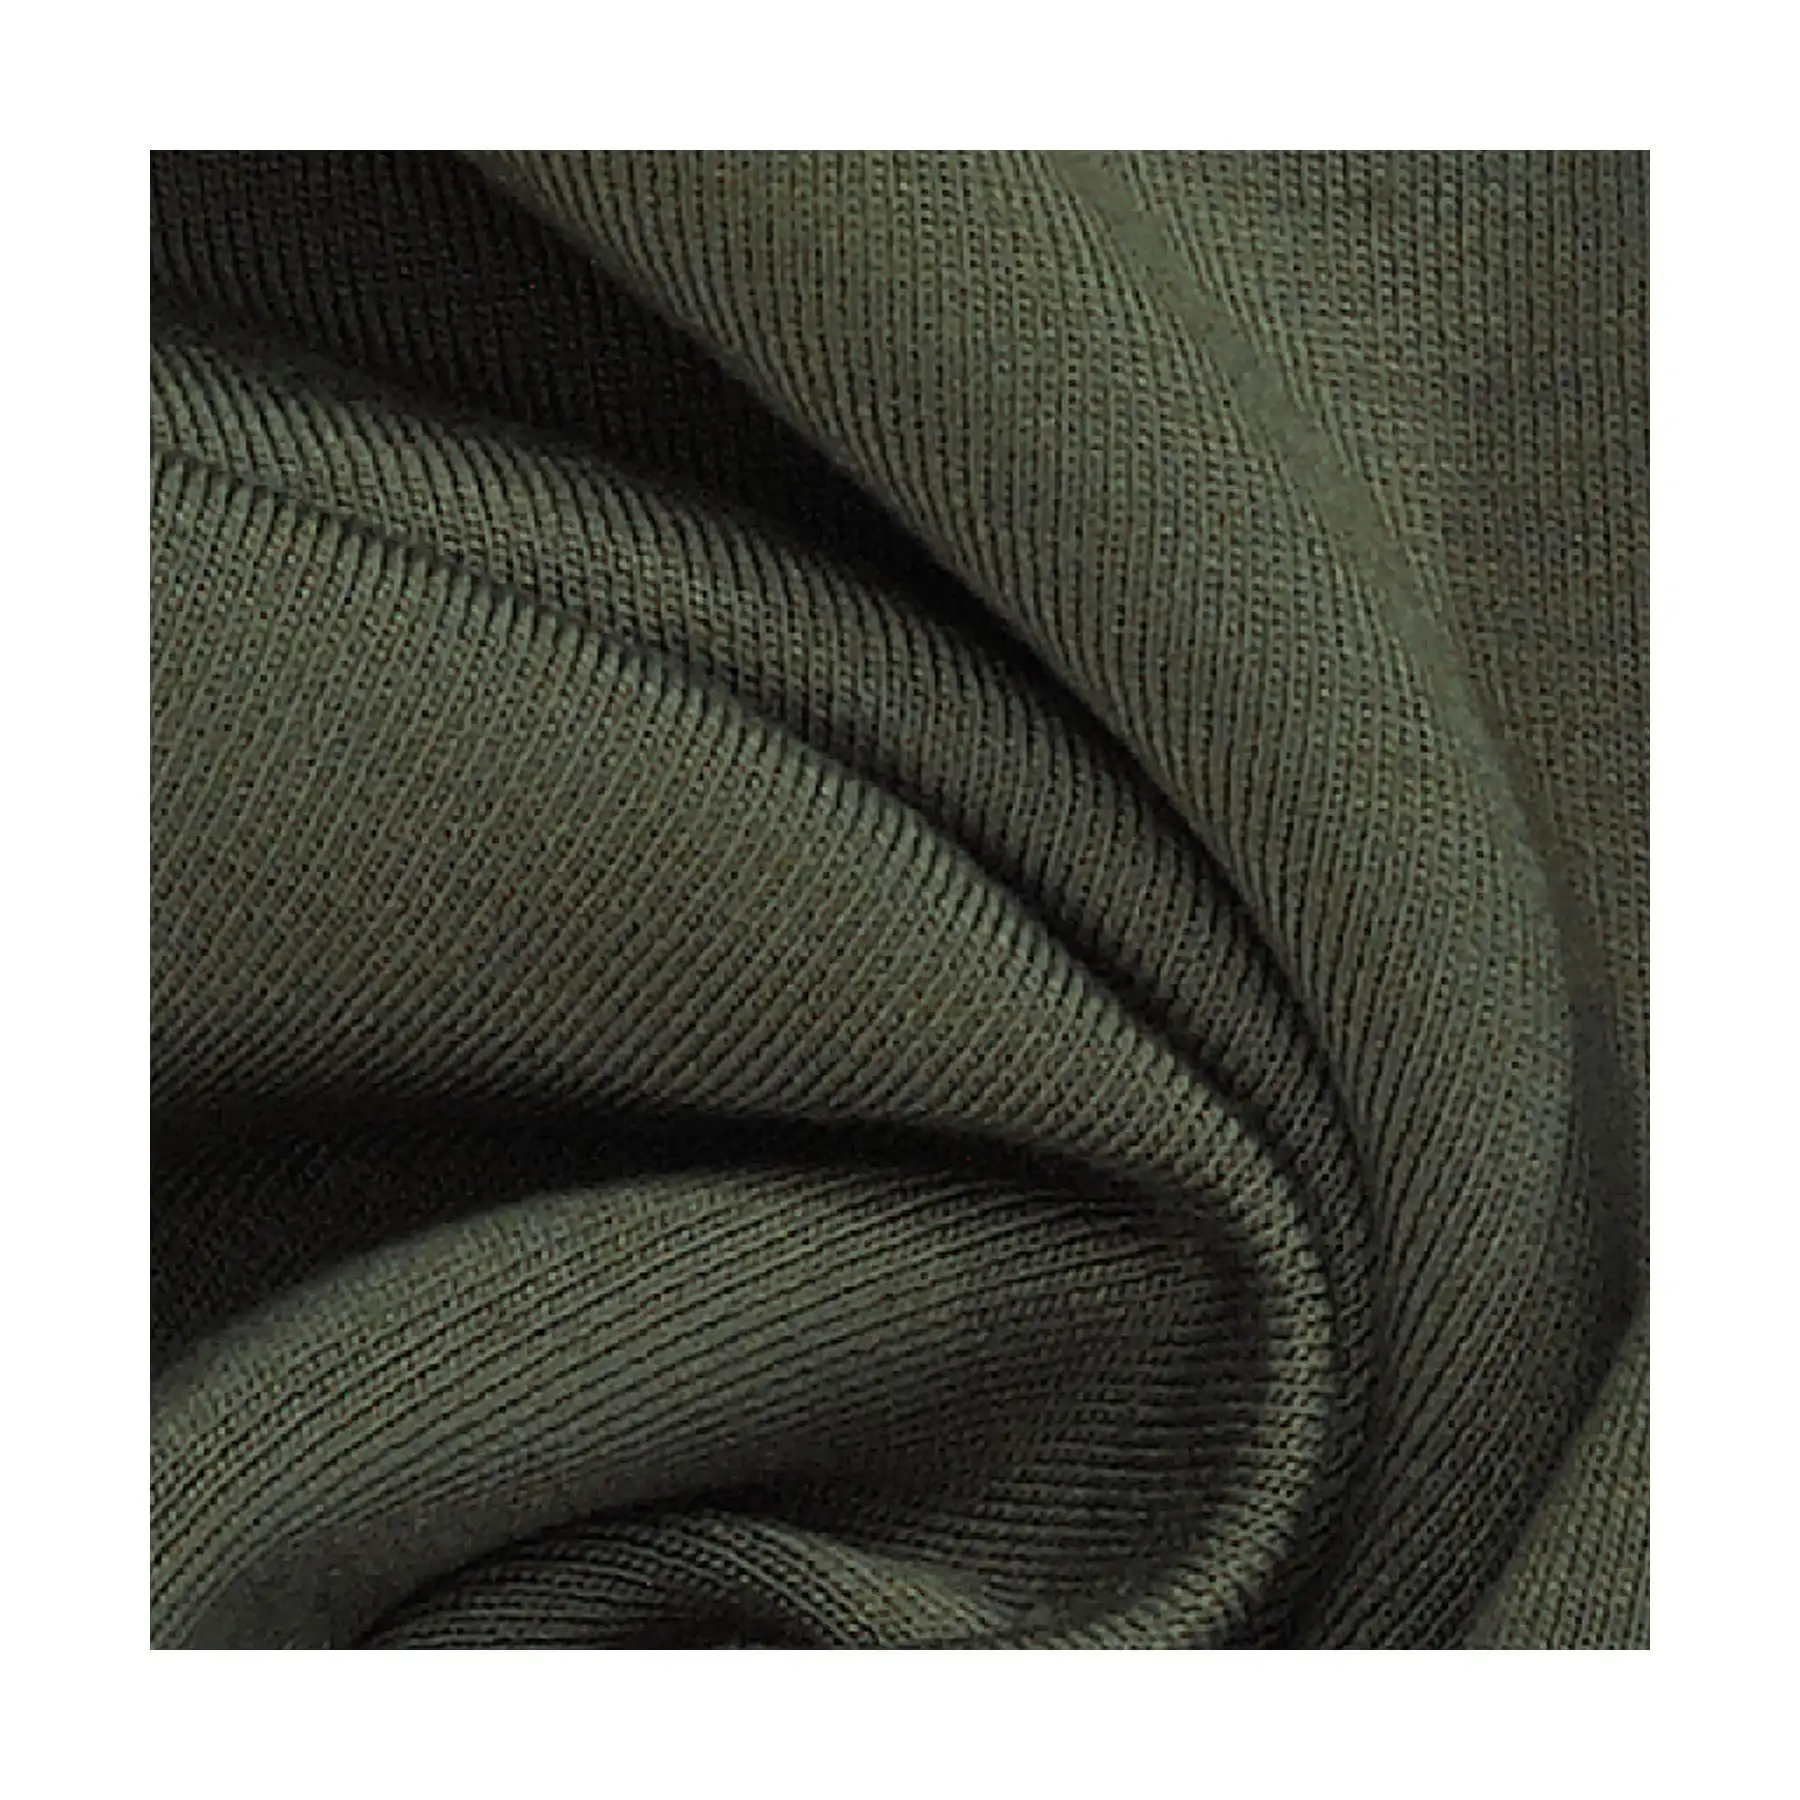 Premium weiches Viskose gebürstetes Sweatshirt - Made in Italy - ultra-bequem und stilvoll für ein erhöhtes Loungewear-Erlebnis